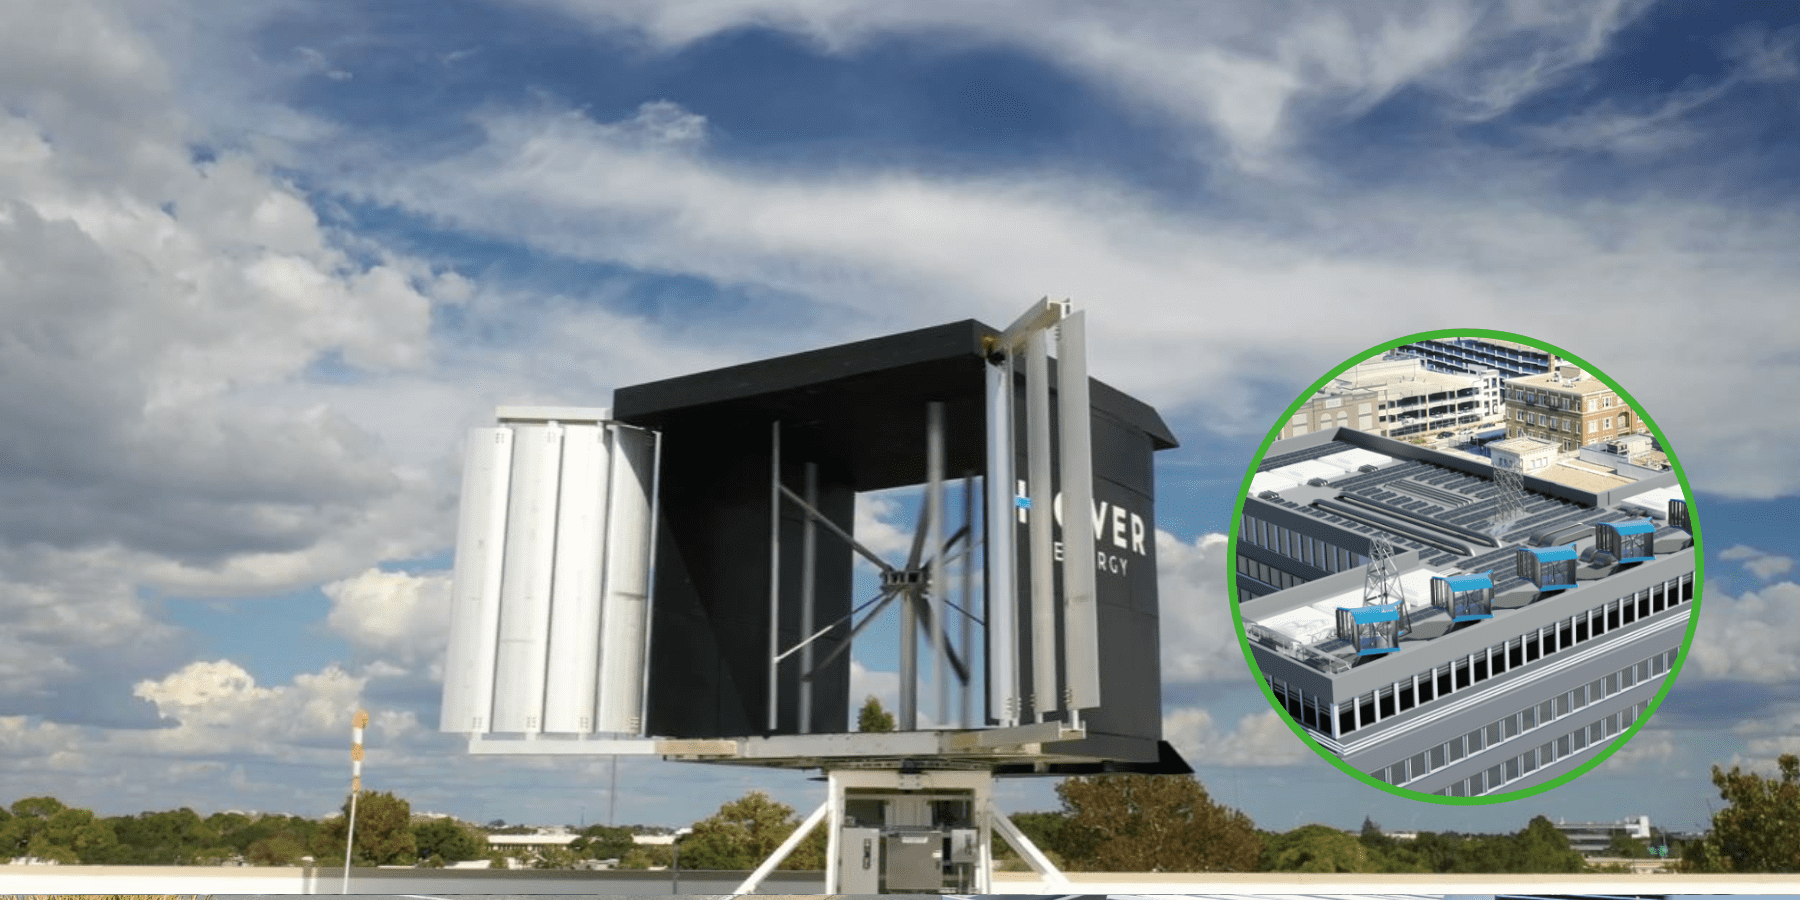 Dachowa turbina wiatrowa z panelami słonecznymi i magazynem energii wchodzi do masowej produkcji